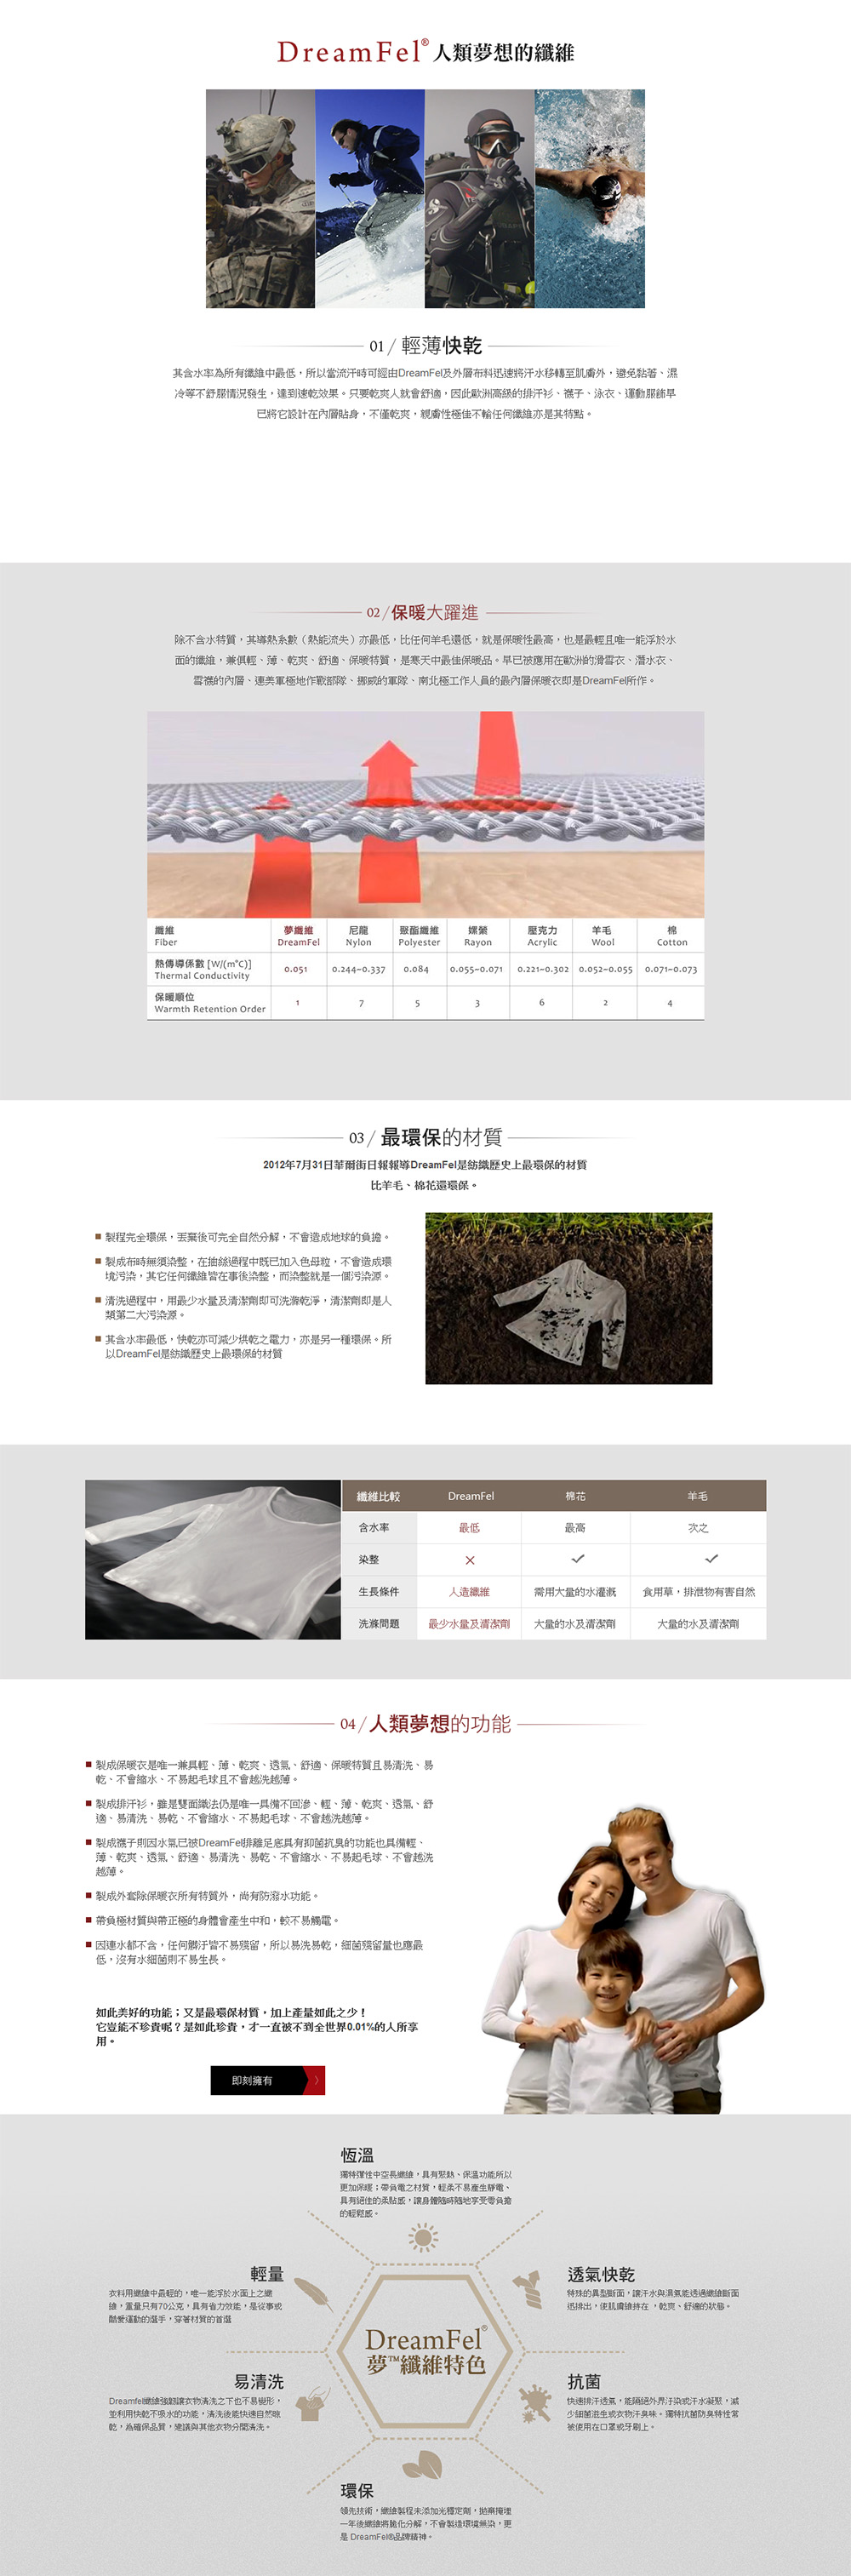 三洋紡織網頁設計